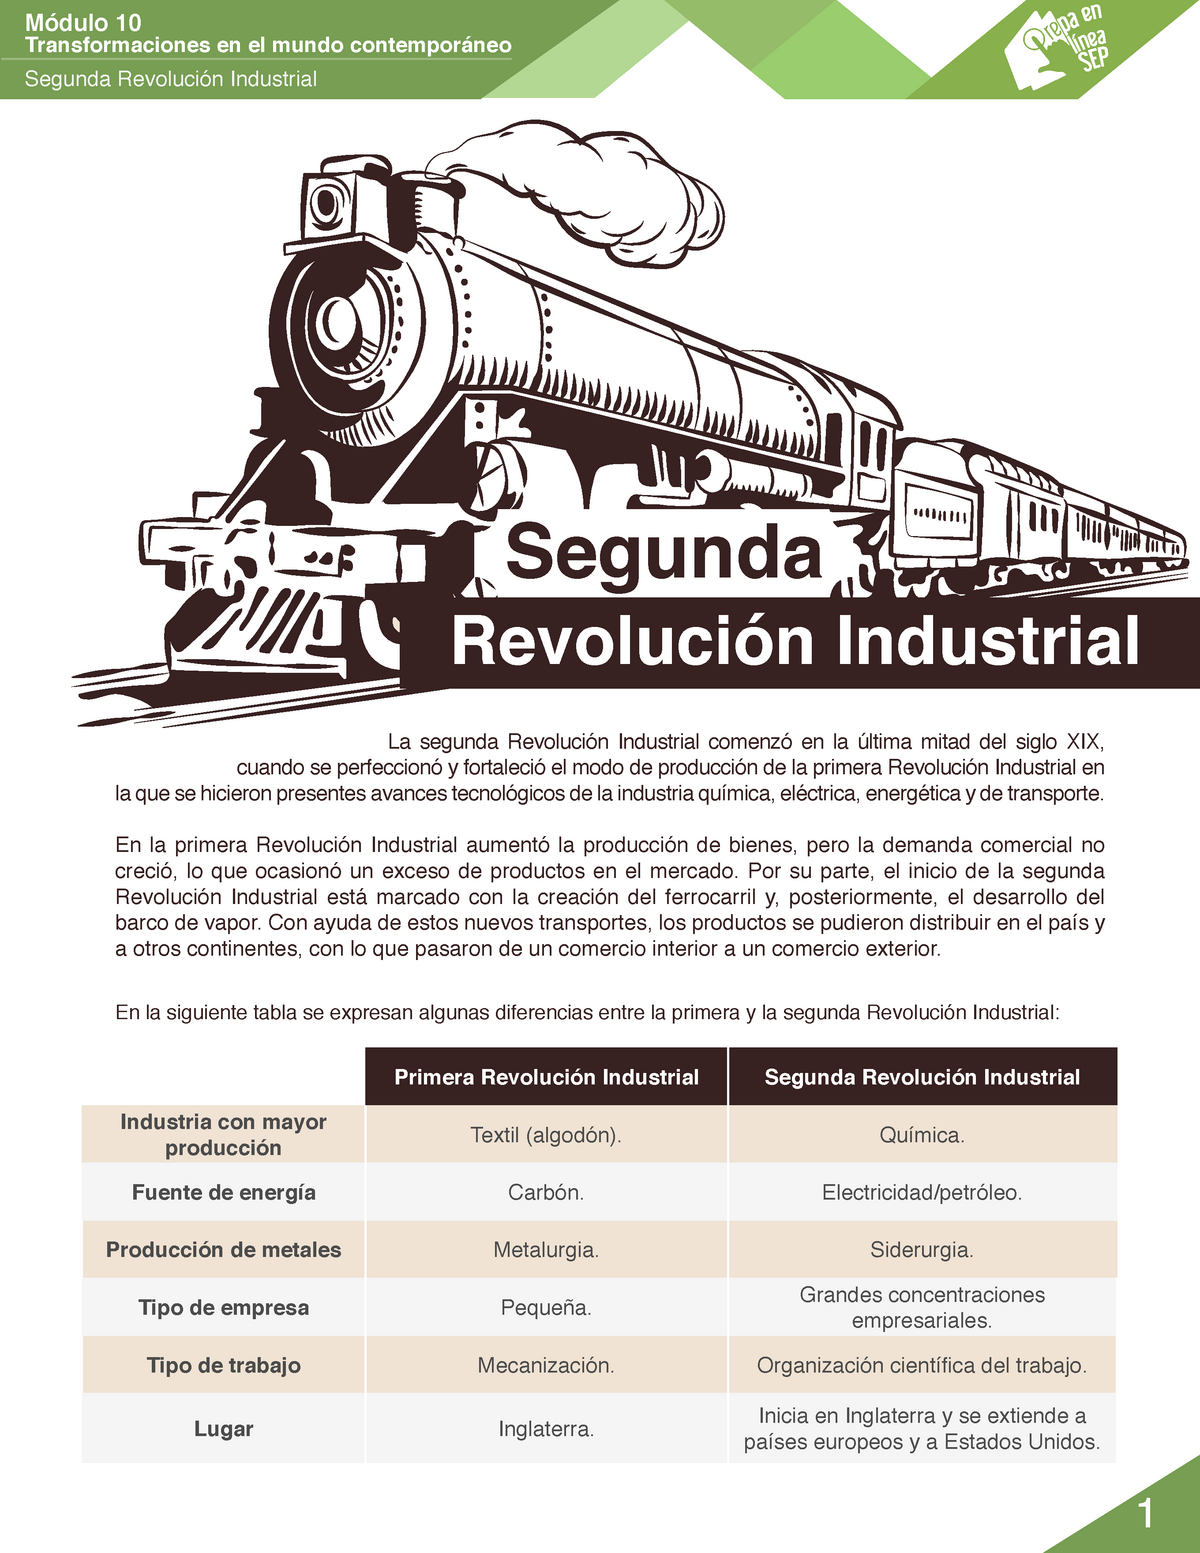 M10 S1 Segunda Revolución Industrial PDF - Transformaciones en el mundo  contemporáneo Segunda - Studocu